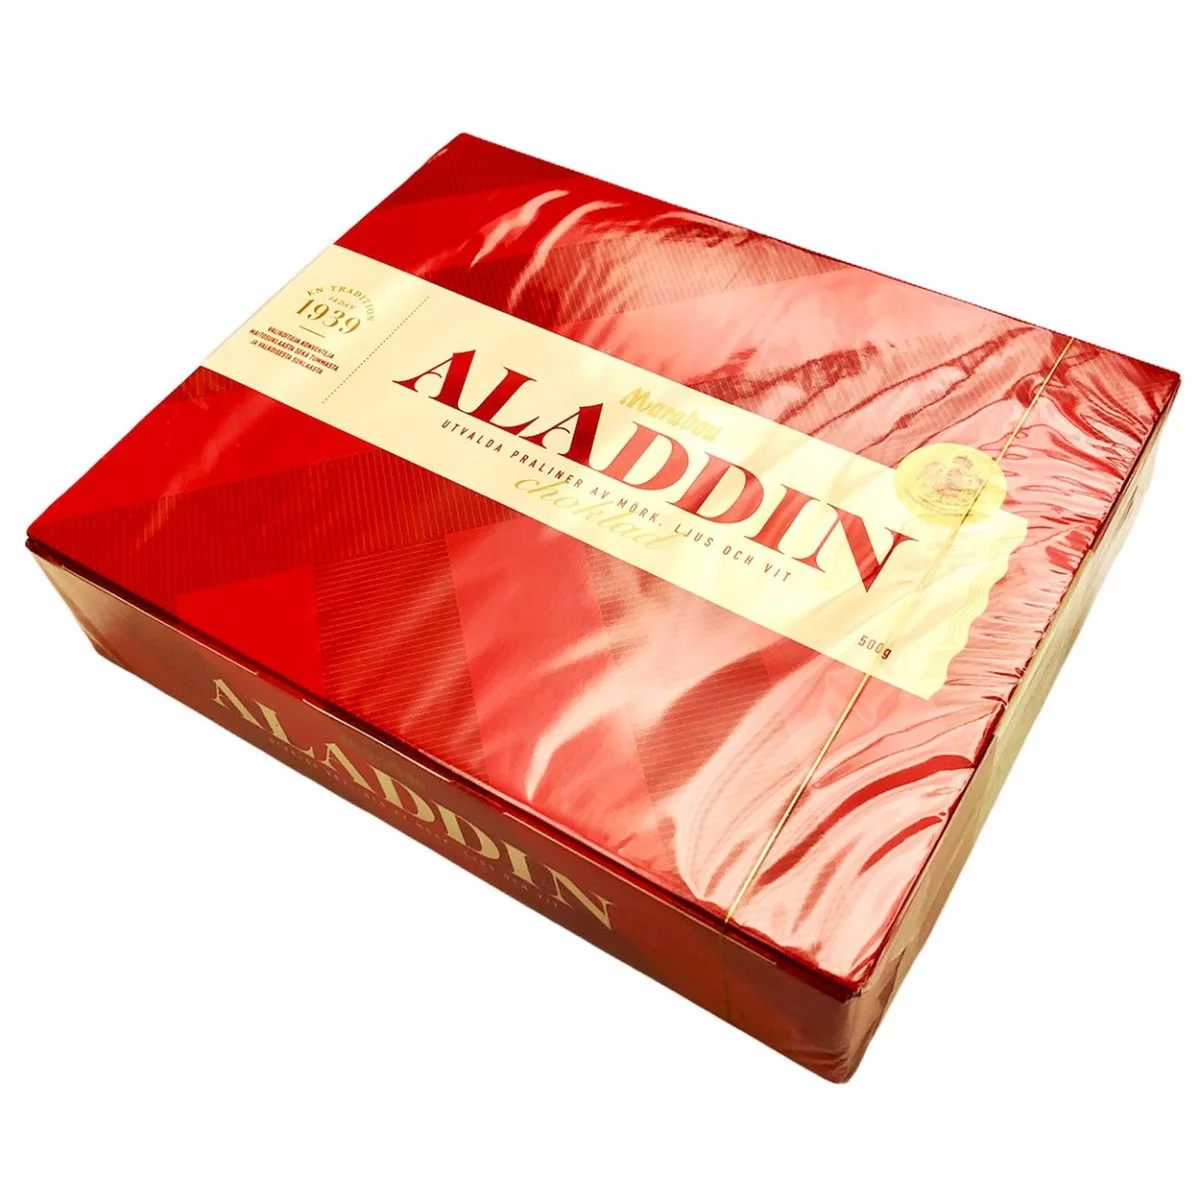 MARABOU Aladdin Pralinenmischung (500g) 1